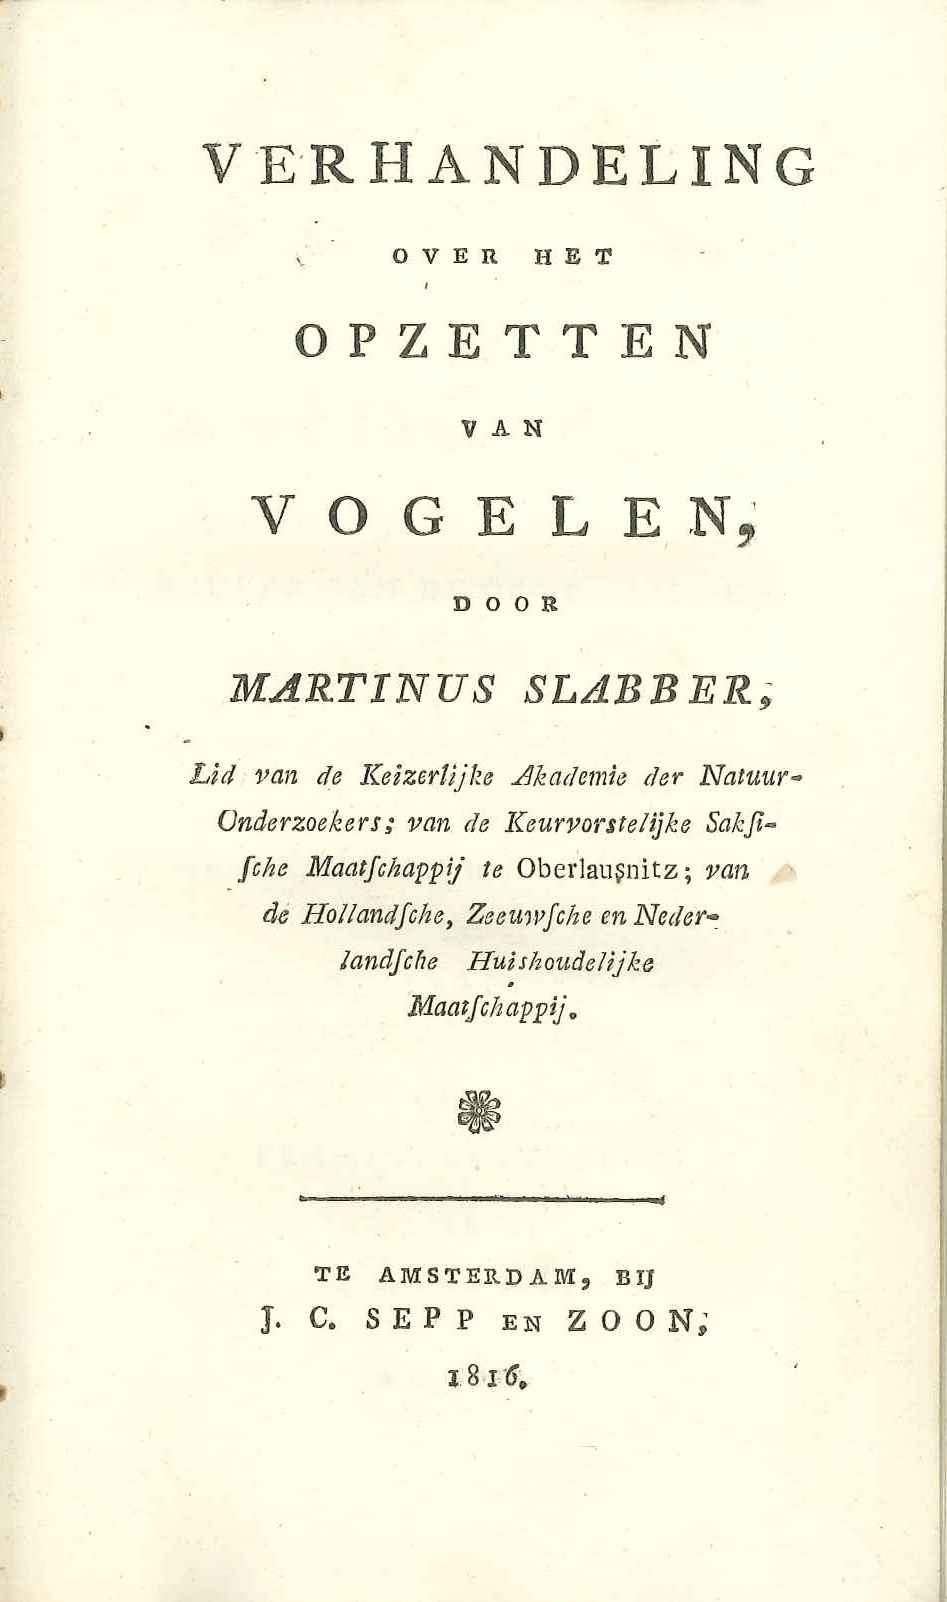 Richtlijnen voor het opzetten van vogels, door M.A. Slabber, 1816.